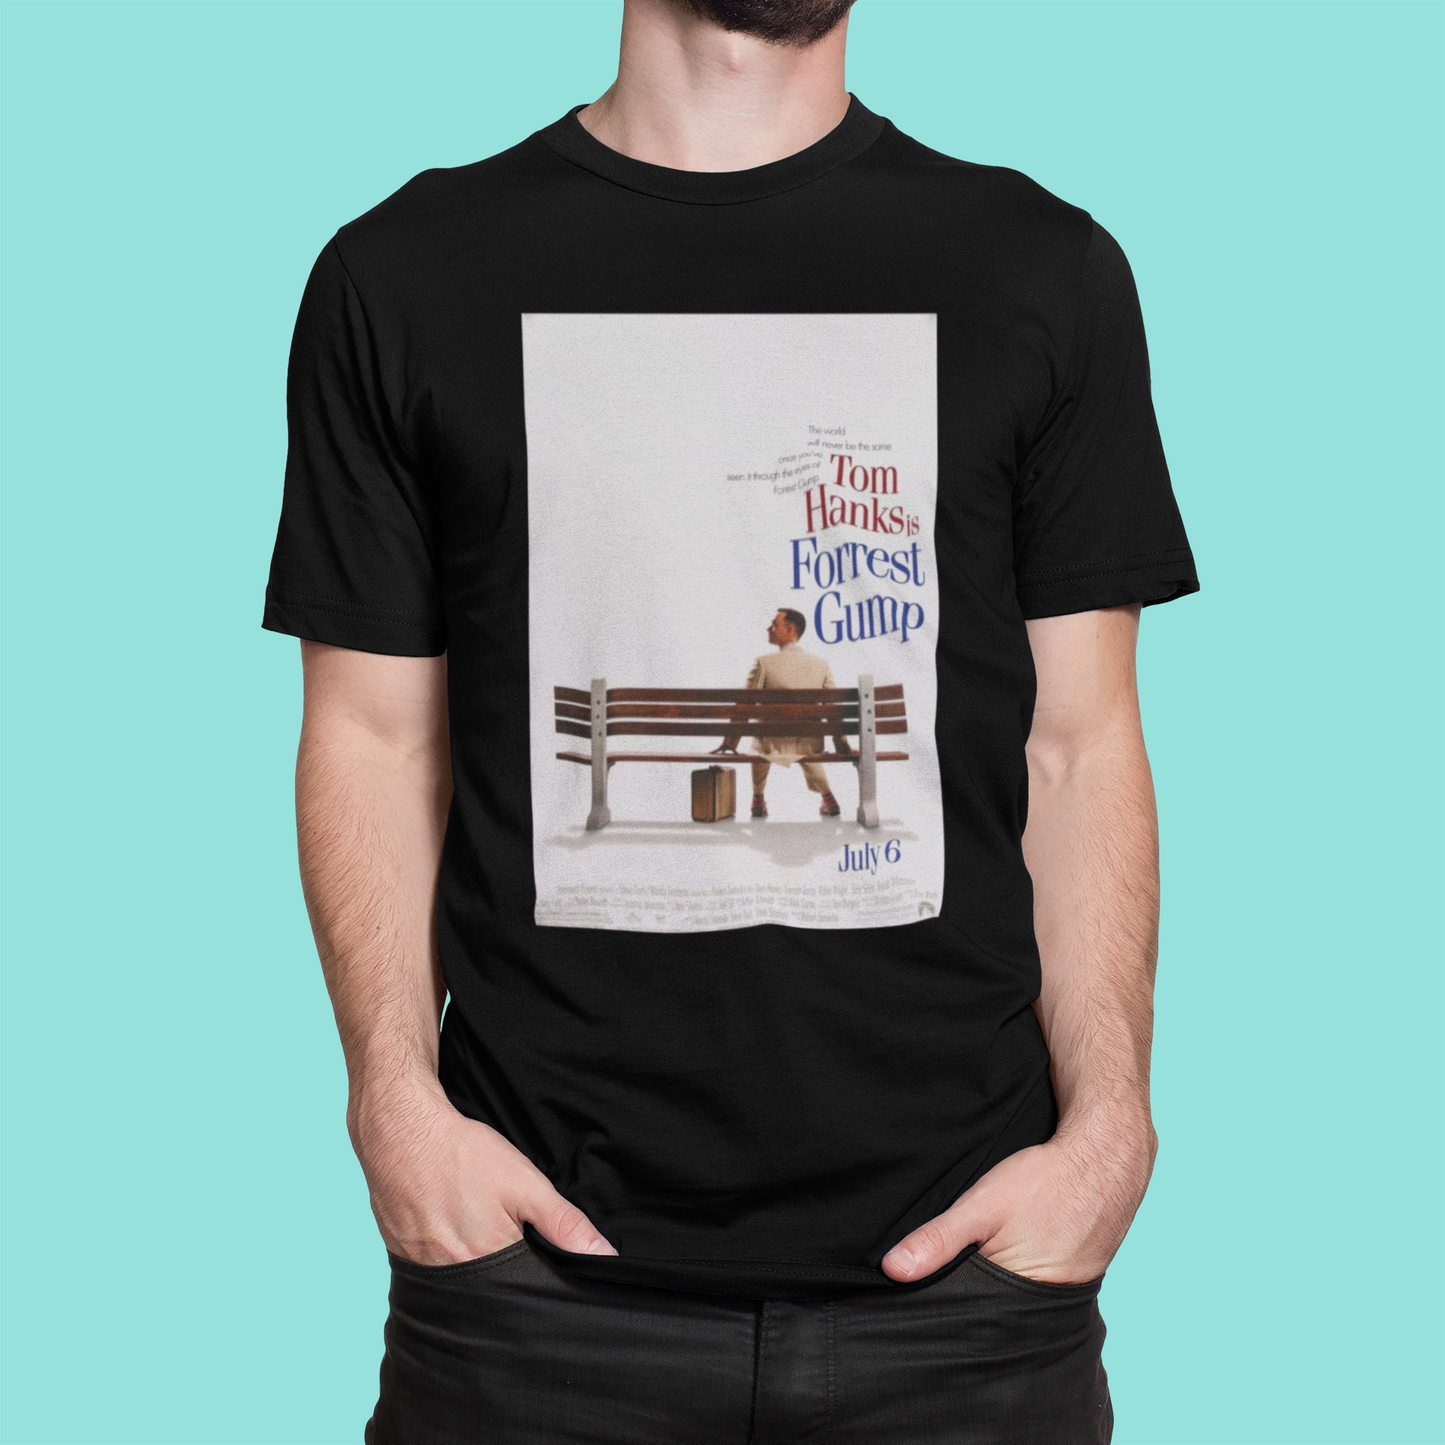 Camiseta "Forrest Gump" Pôster - Filmes